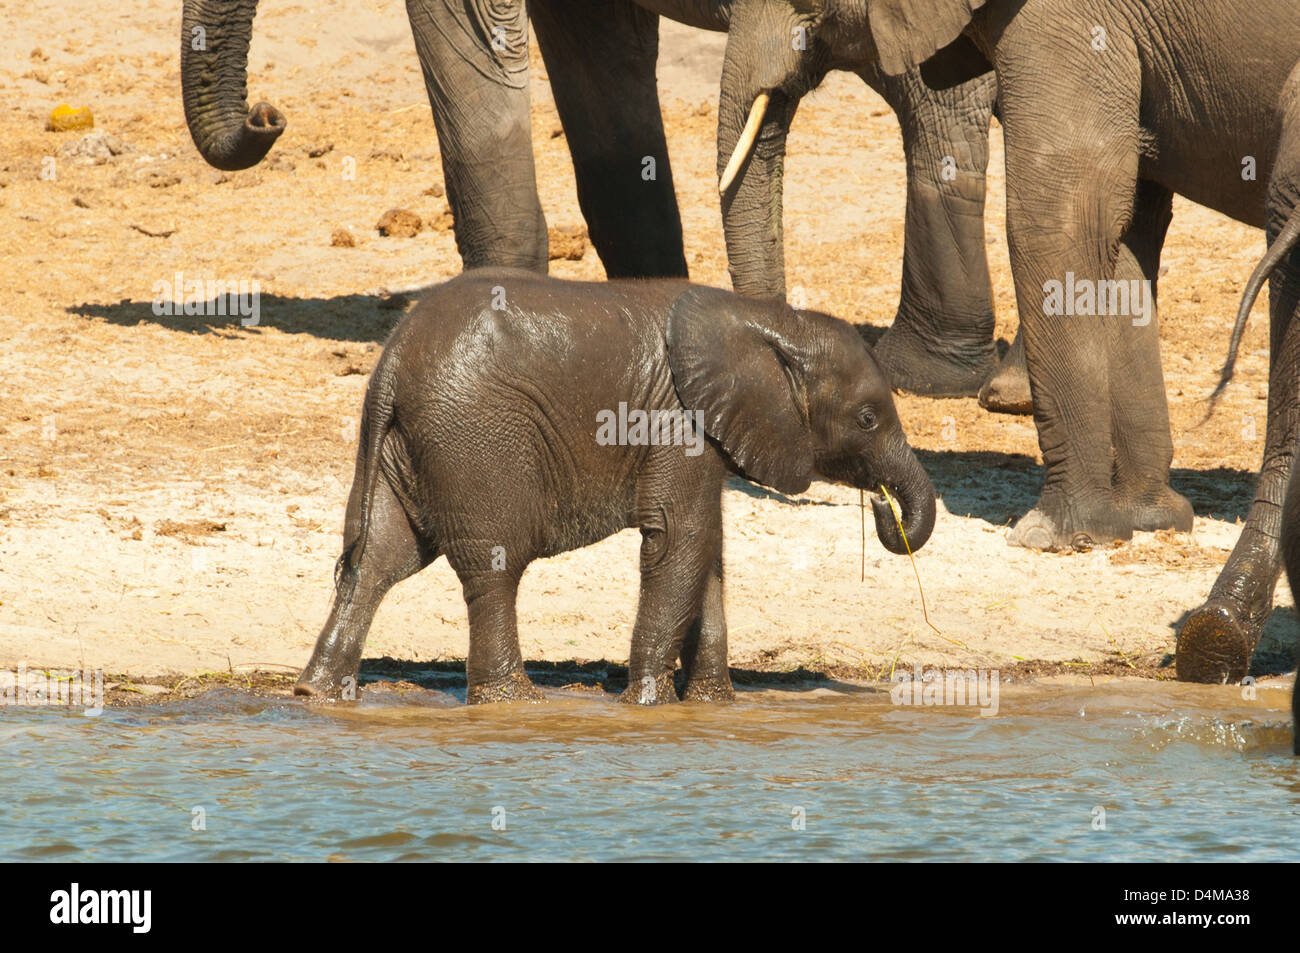 Baby Elephant at Chobe River, Chobe National Park, Botswana Stock Photo